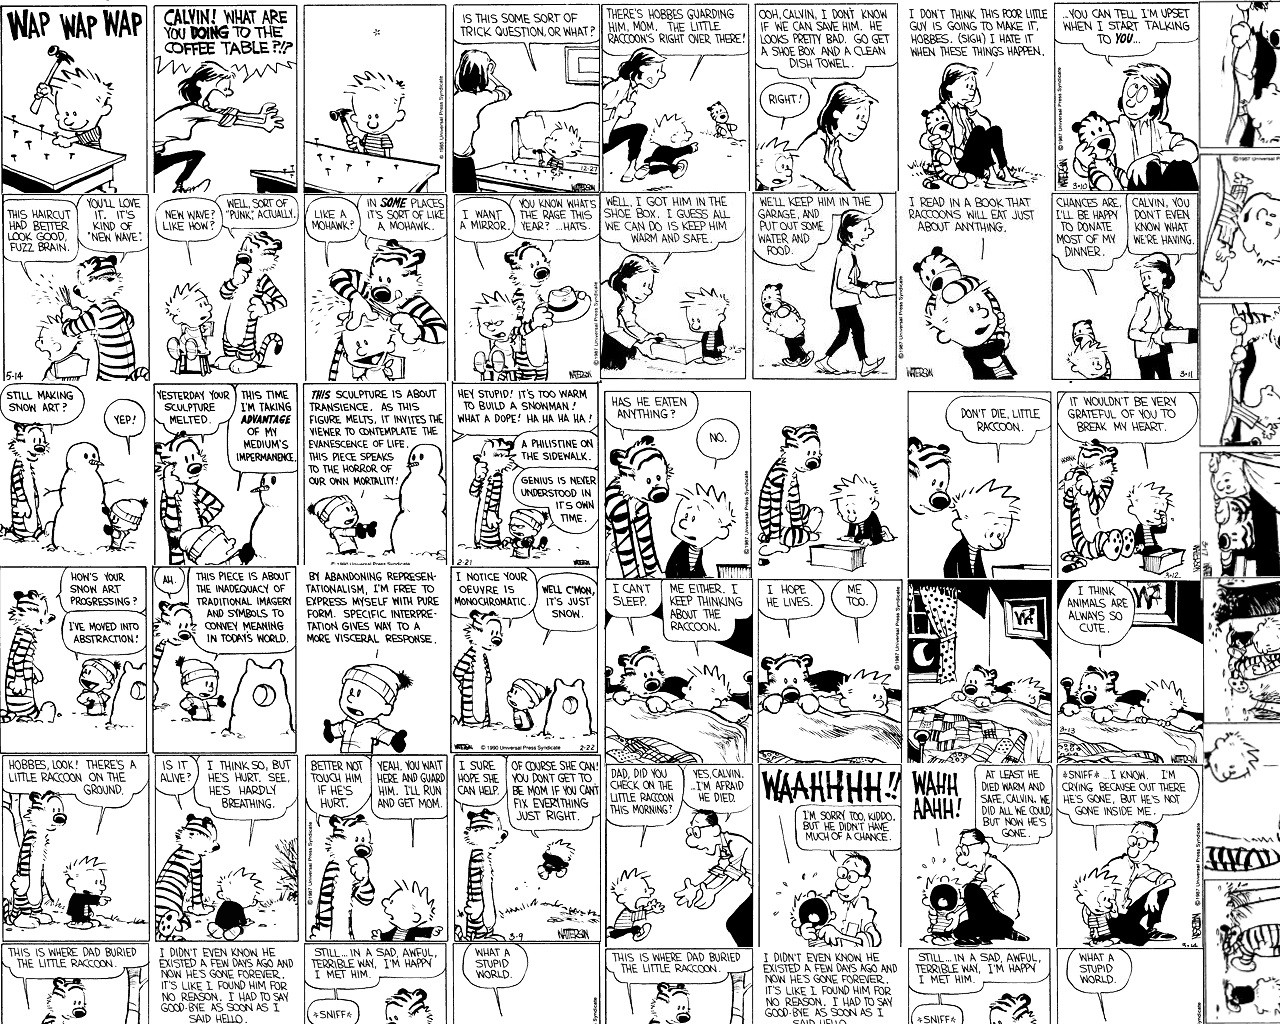 Comic Books Calvin And Hobbes Cartoon Humor 1280x1024